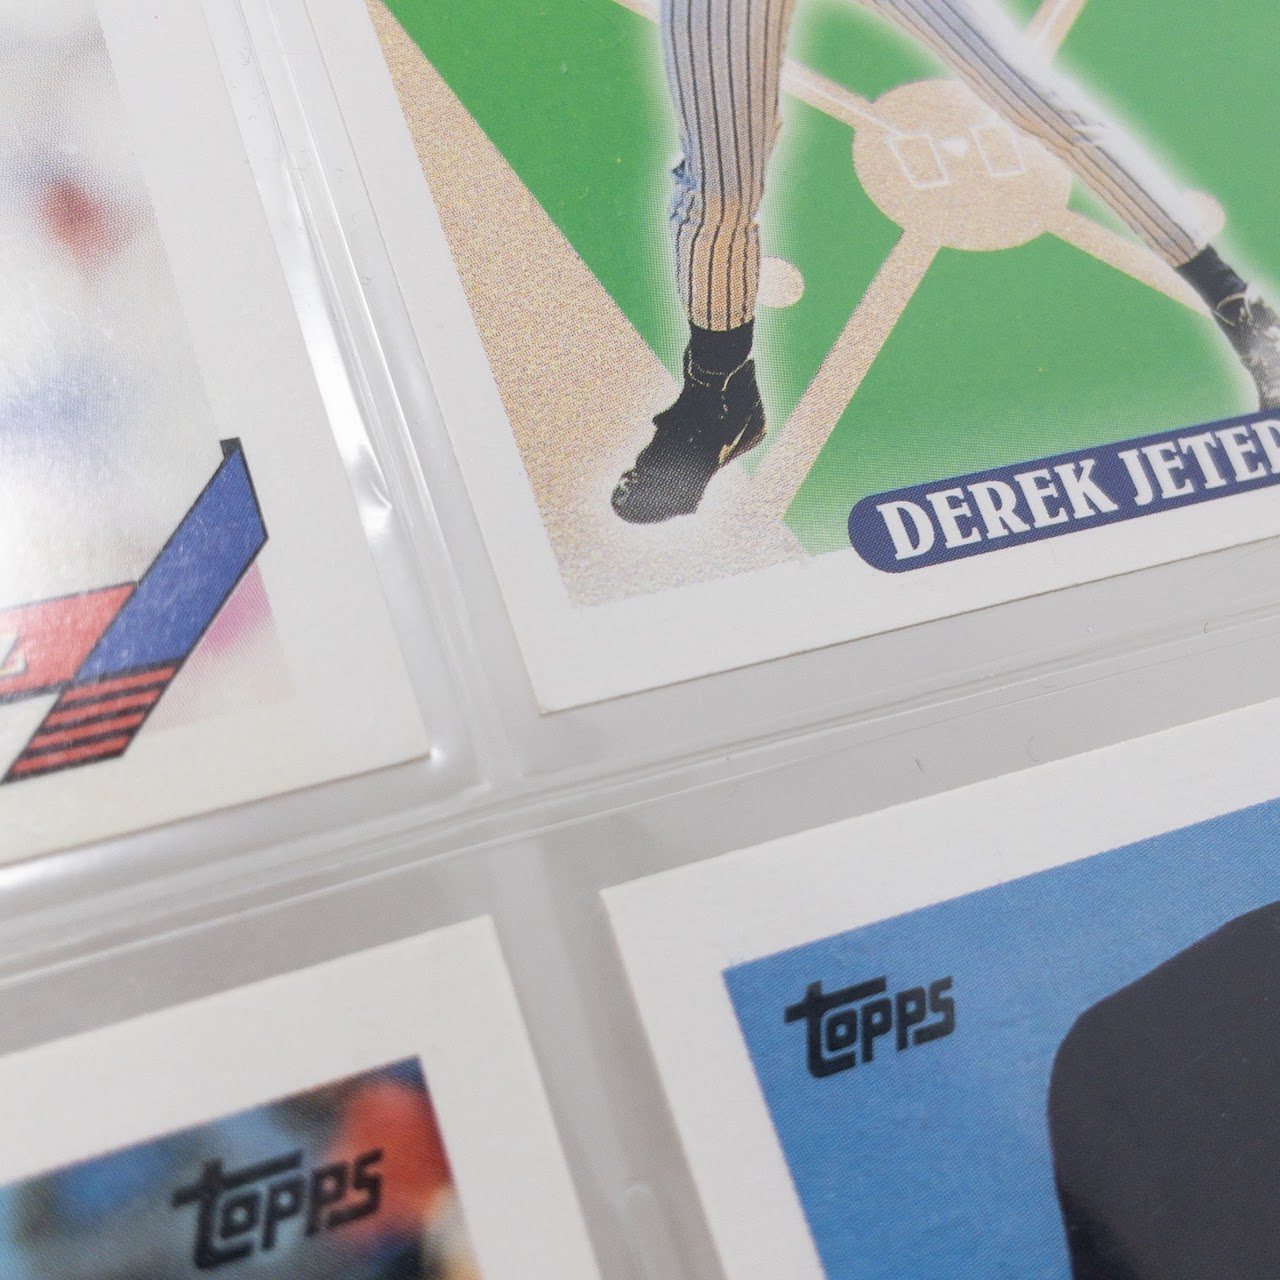 Derek Jeter 1992 Draft Pick Topps Baseball Card